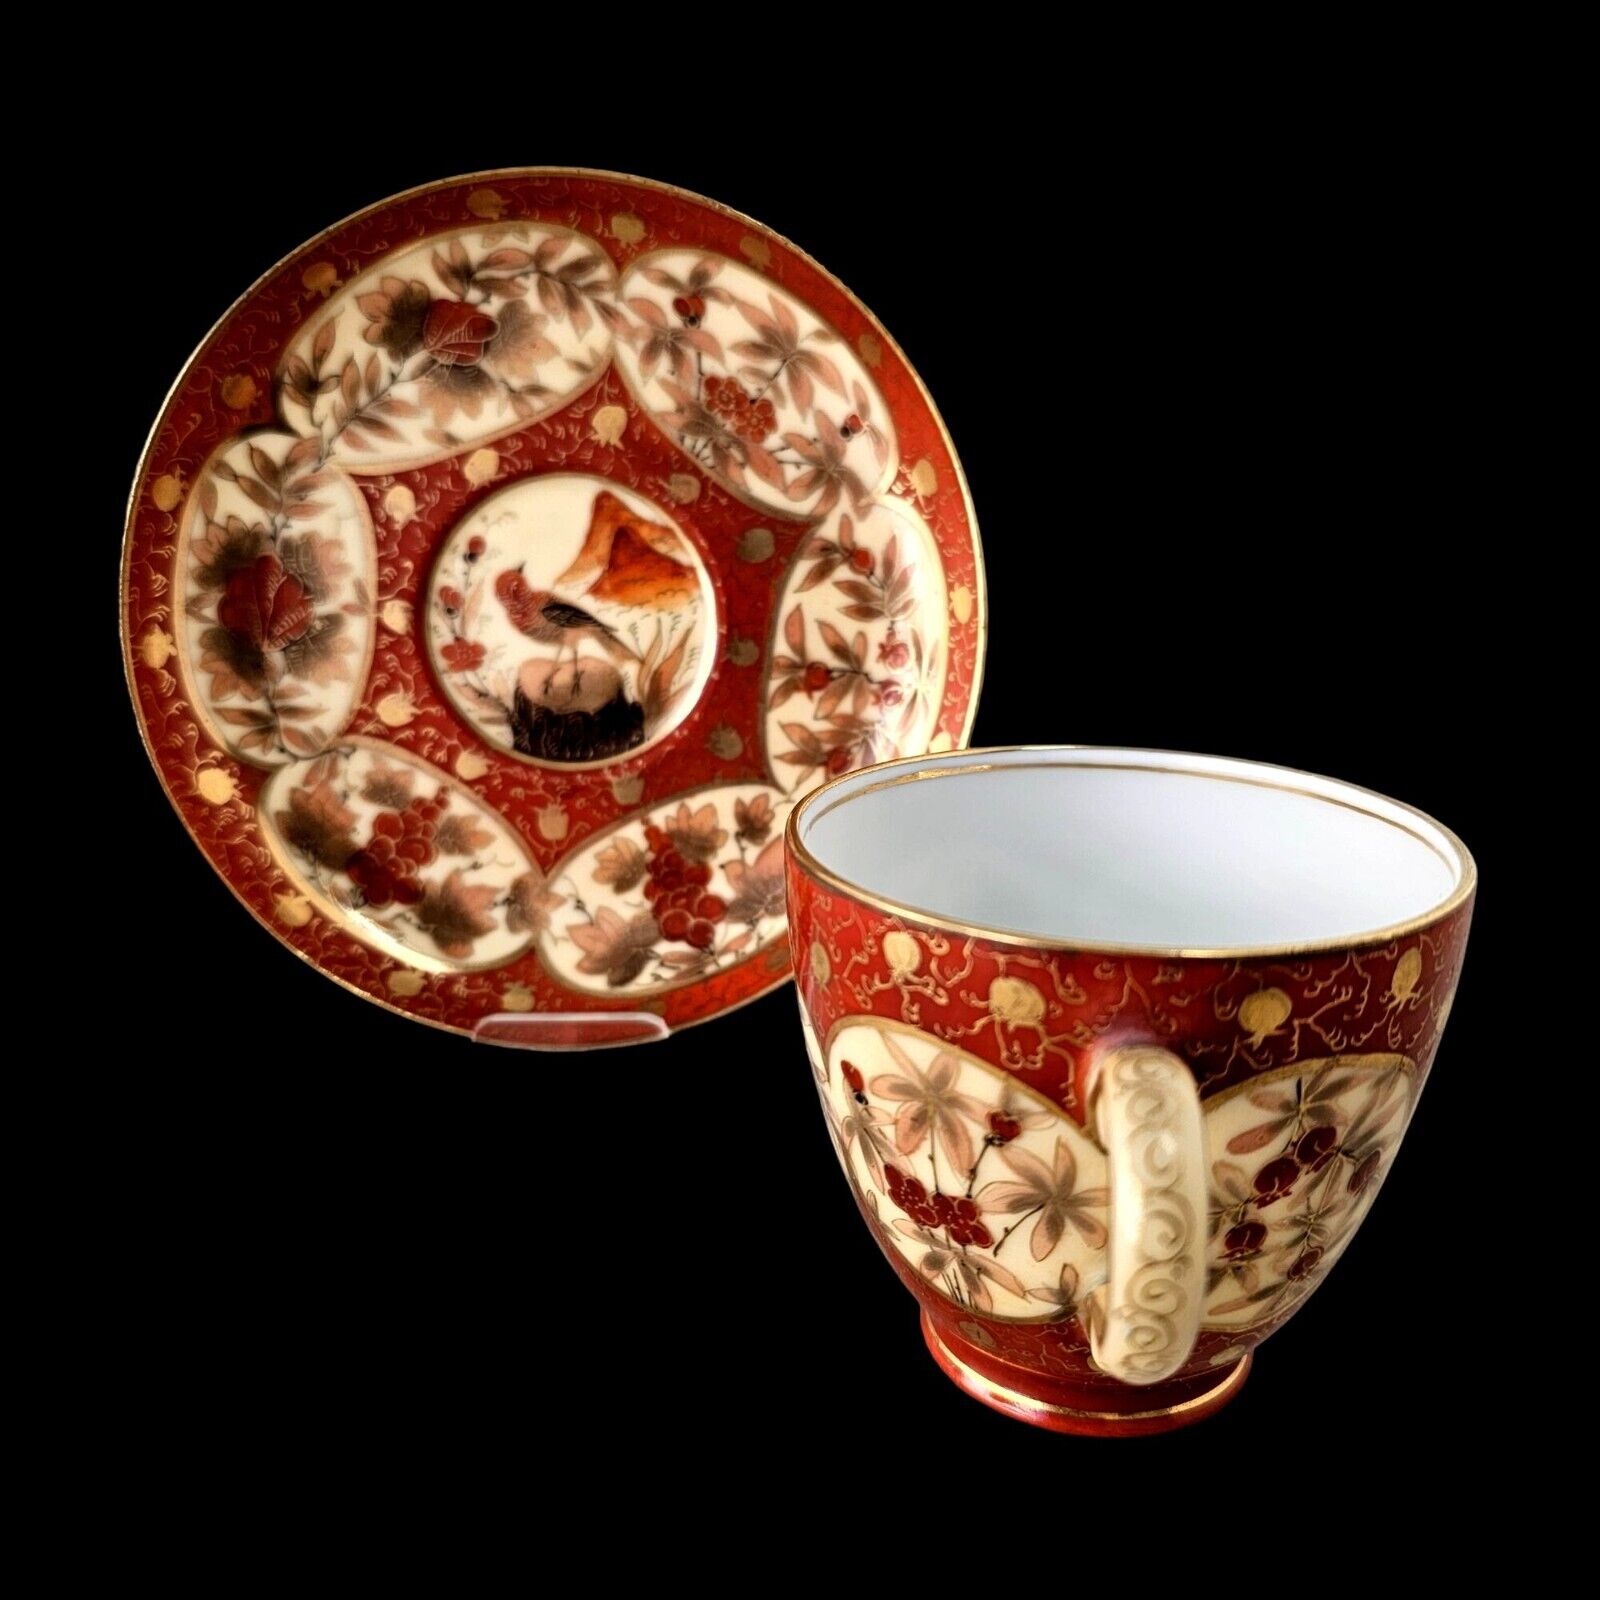 Carl Knoll Carlsbad Antique Czech Porcelain Demitasse Cup & Saucer Red Gold Bird